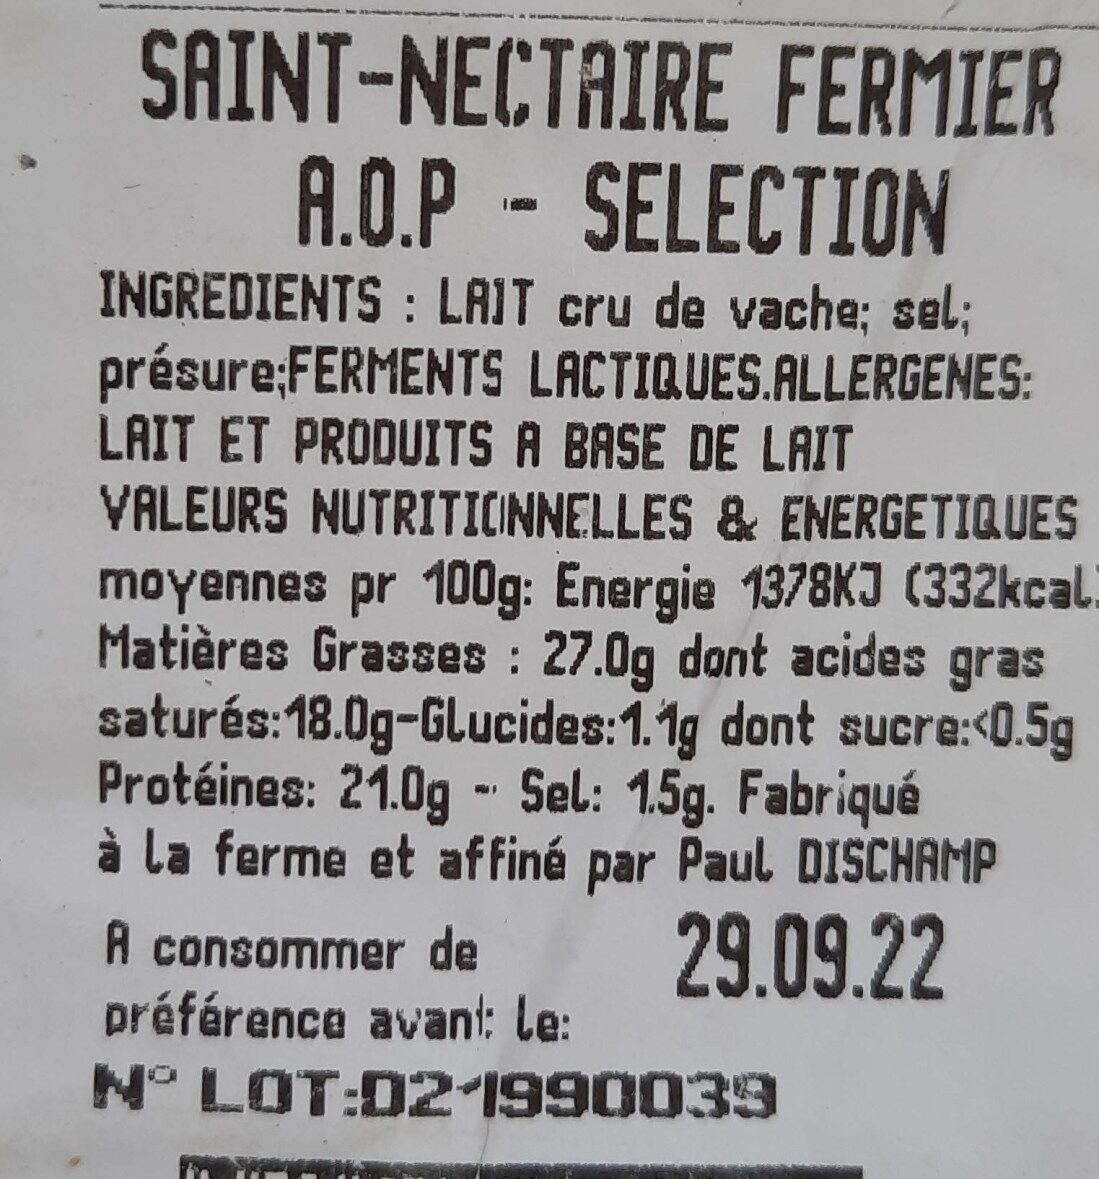 Saint nectaire fermier aop sélection - Nutrition facts - fr